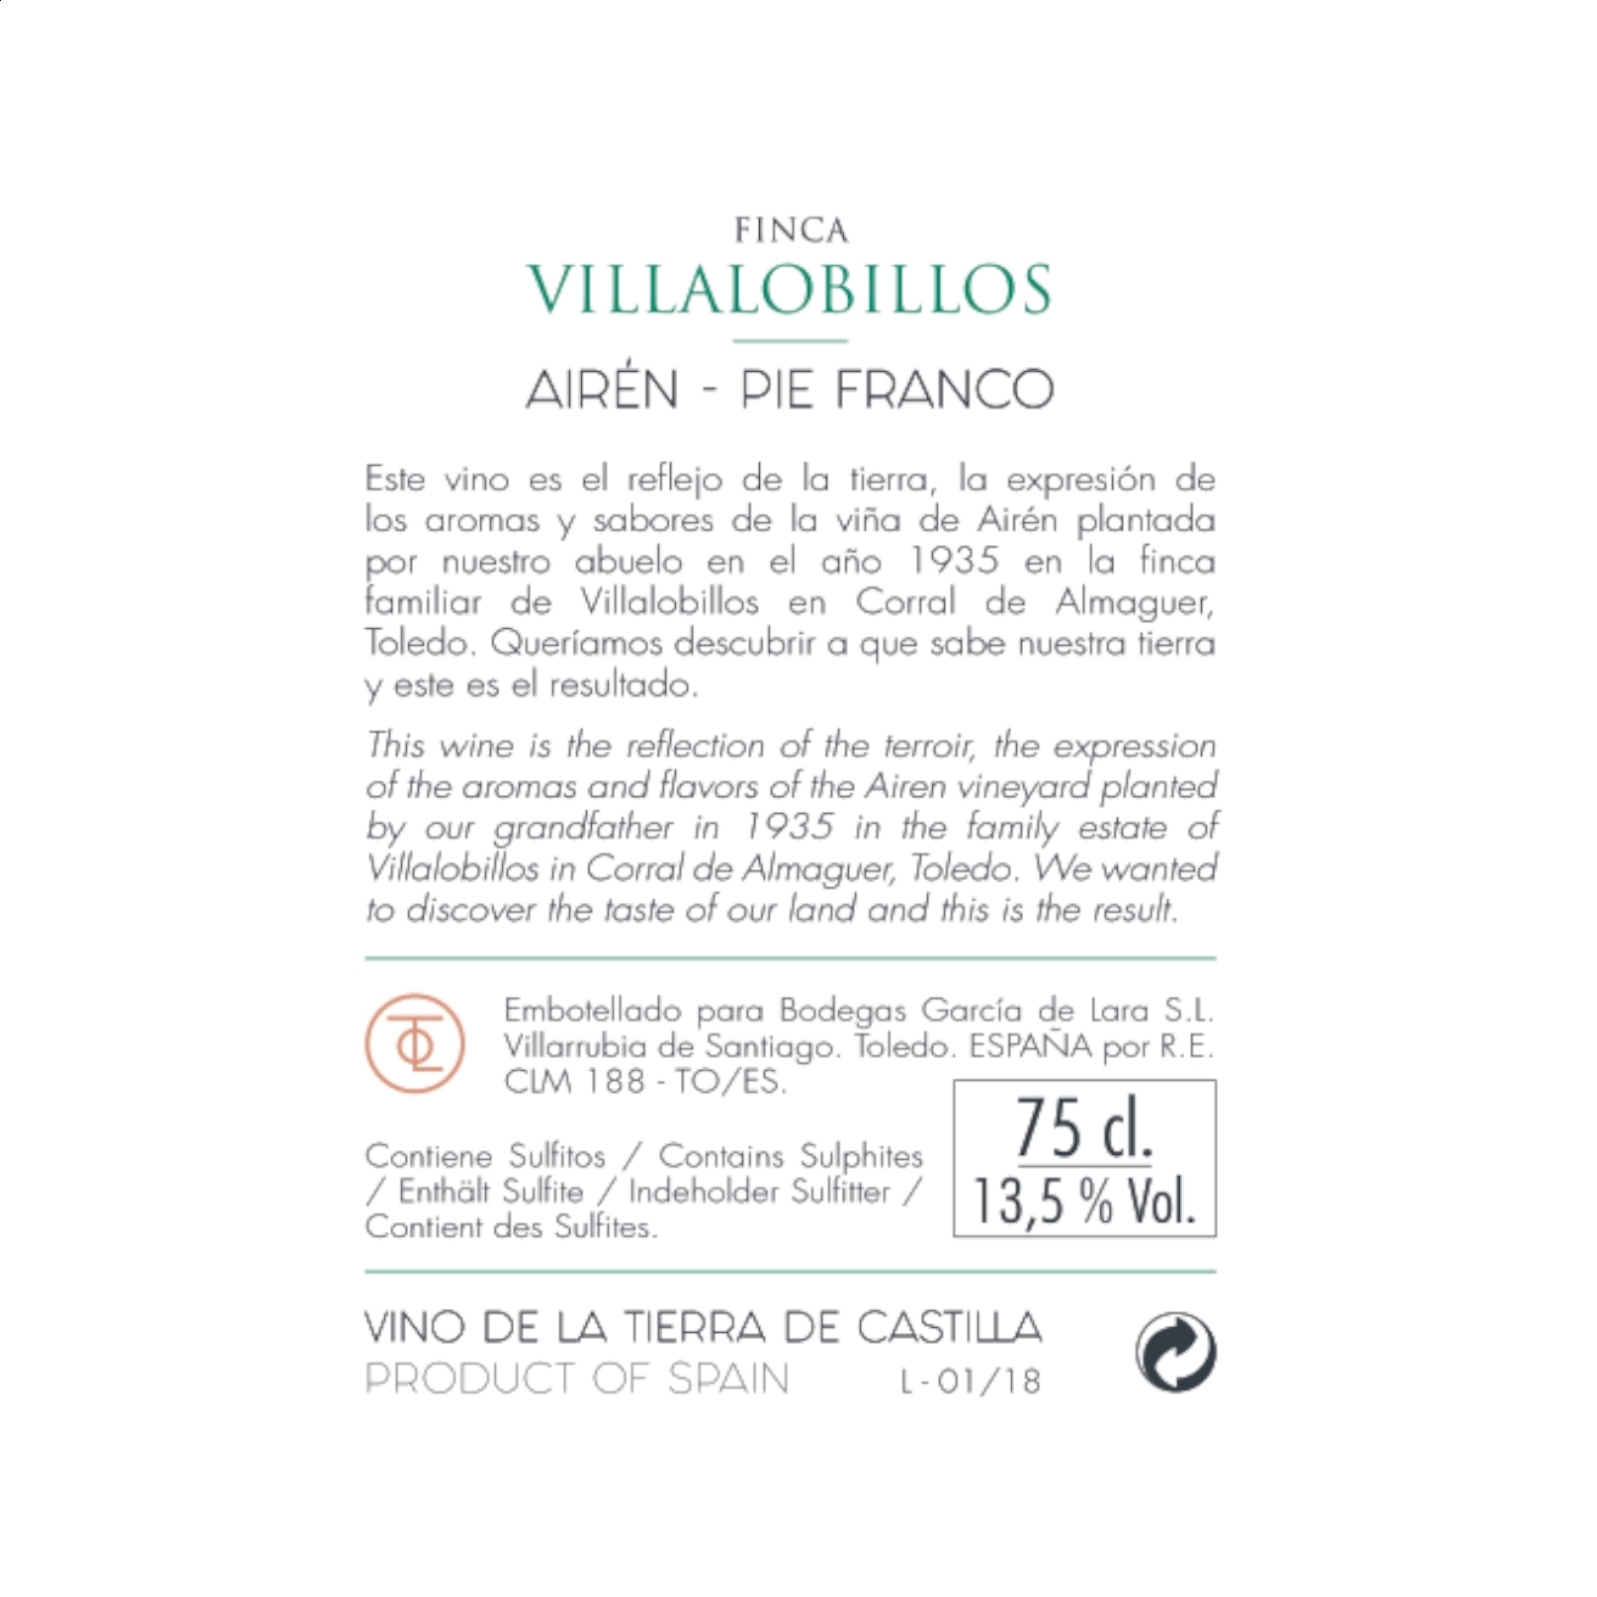 Finca Villalobillos Airén Pie Franco - Vino blanco joven IGP Vino de la Tierra de Castilla 75cl, 3uds